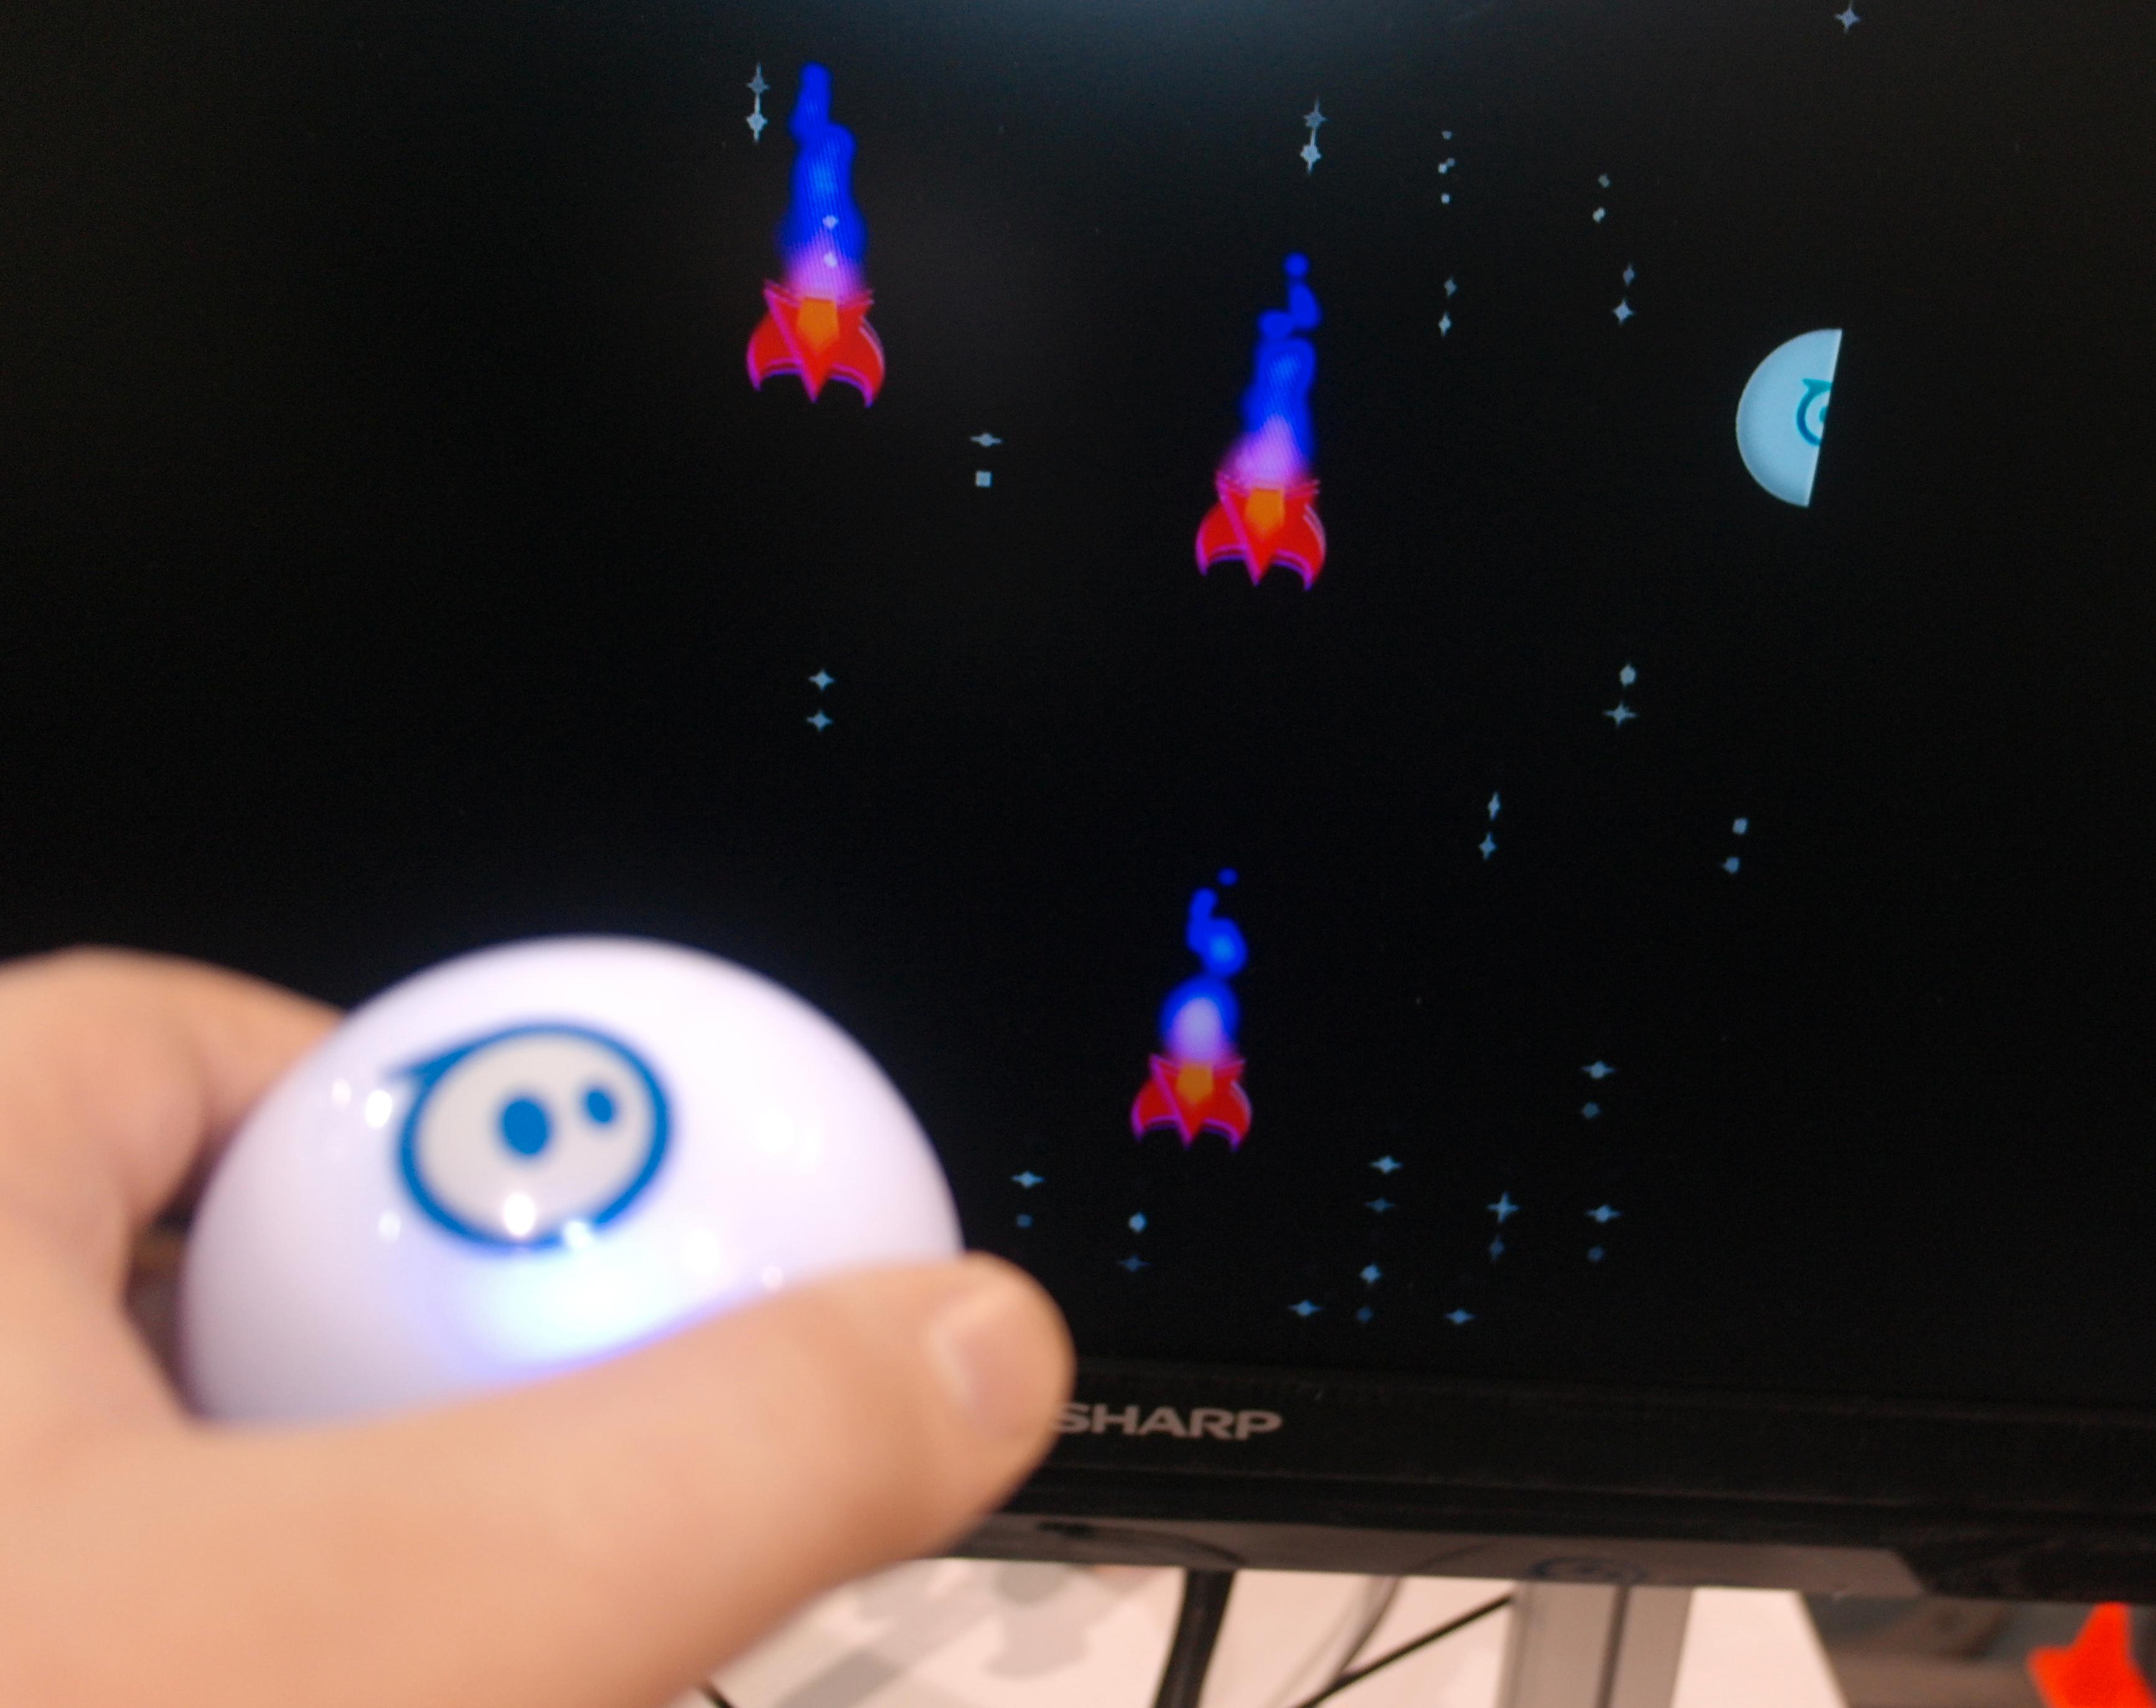 Slik ser det ut når du bruker Sphero som spillkontroller.